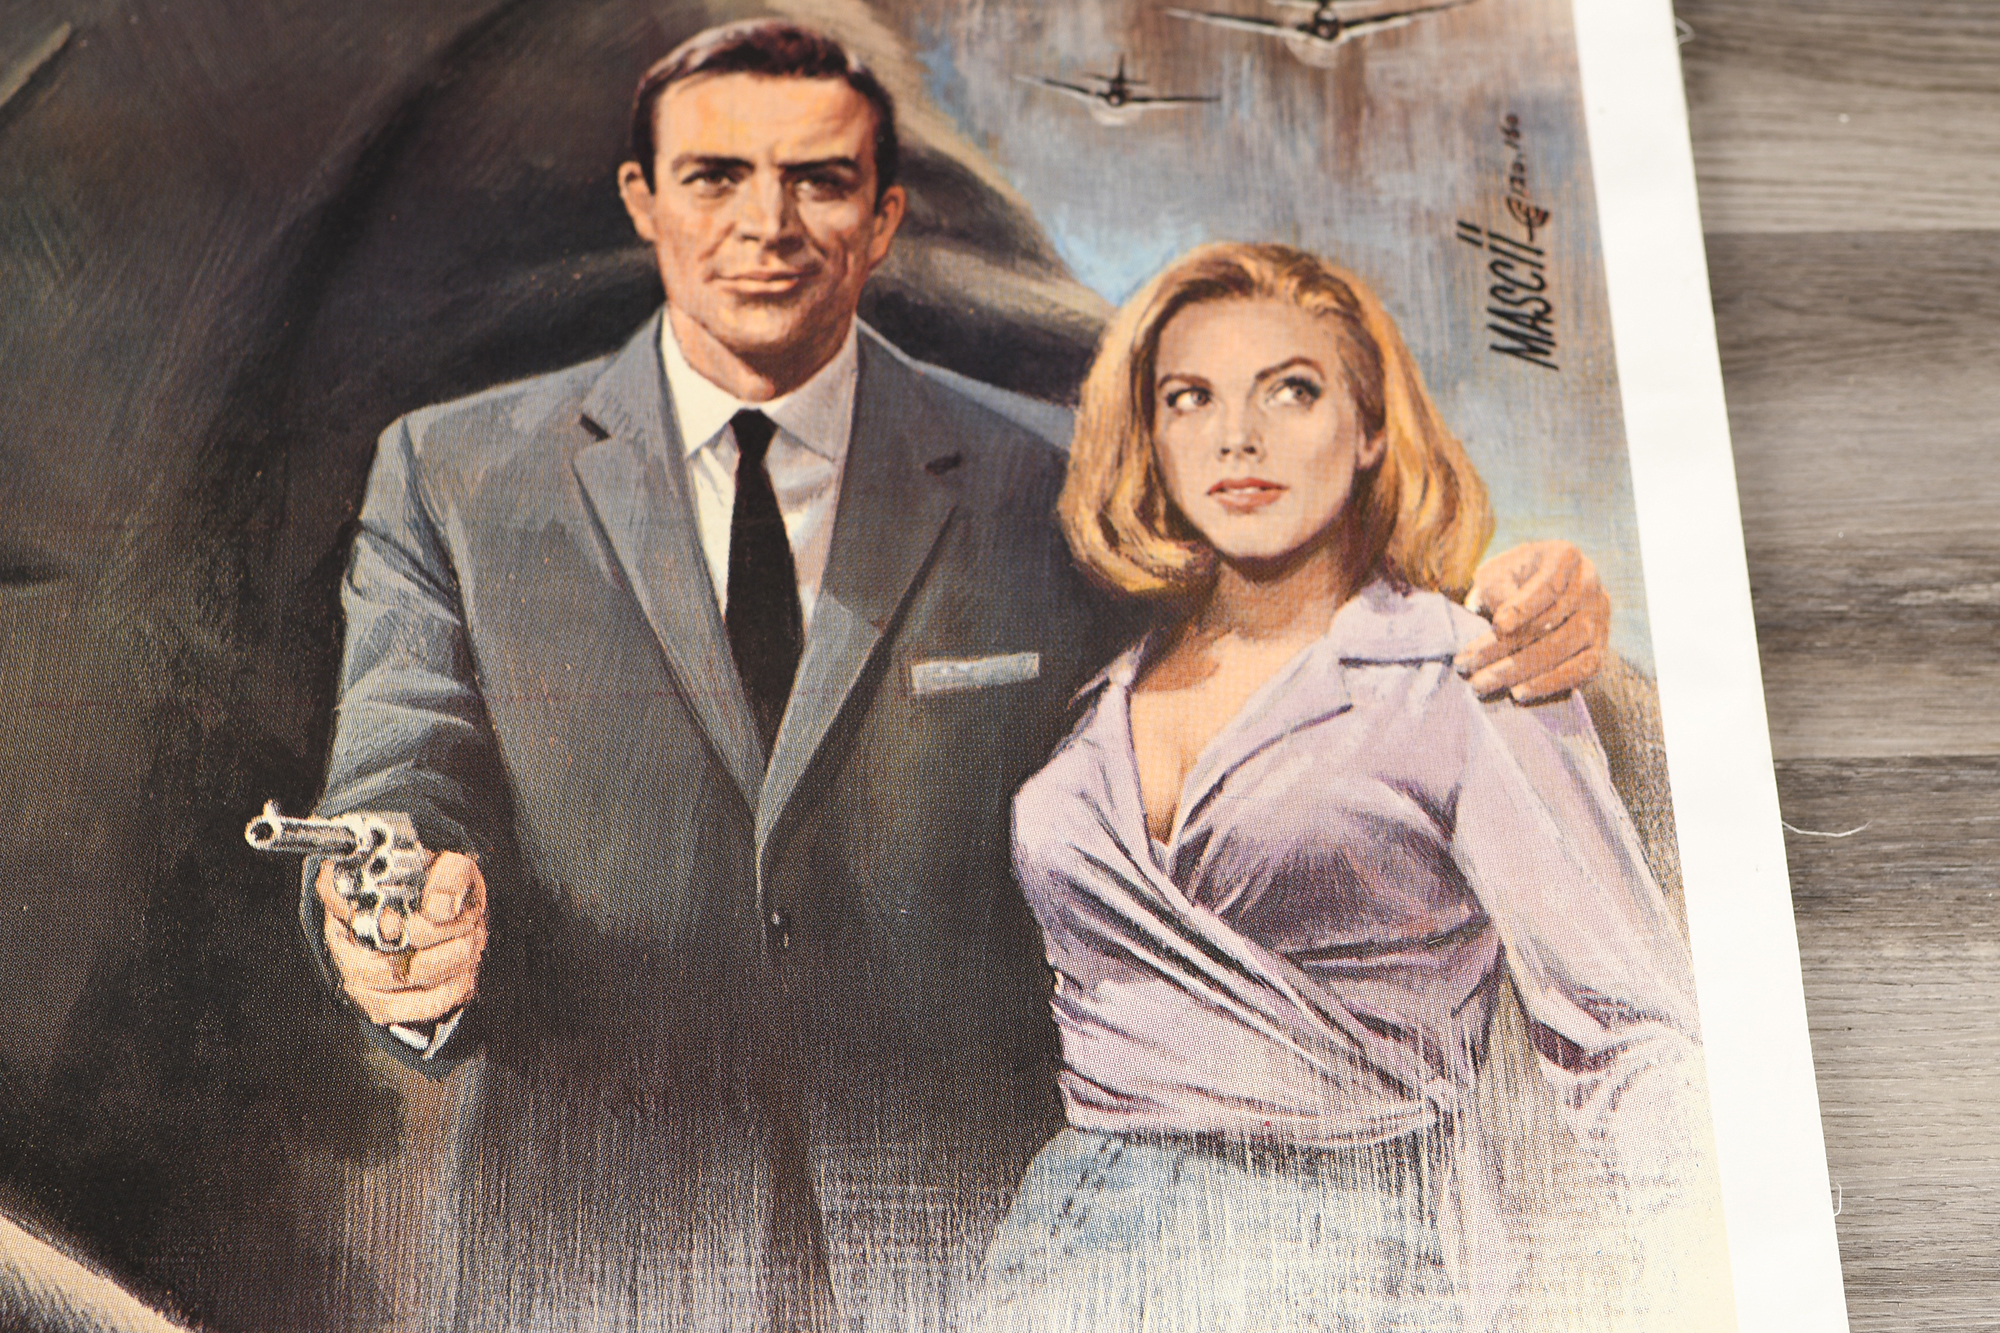 Original Vintage James Bond "Goldfinger" Cinema Poster (1965) Superb Condition - Image 8 of 16